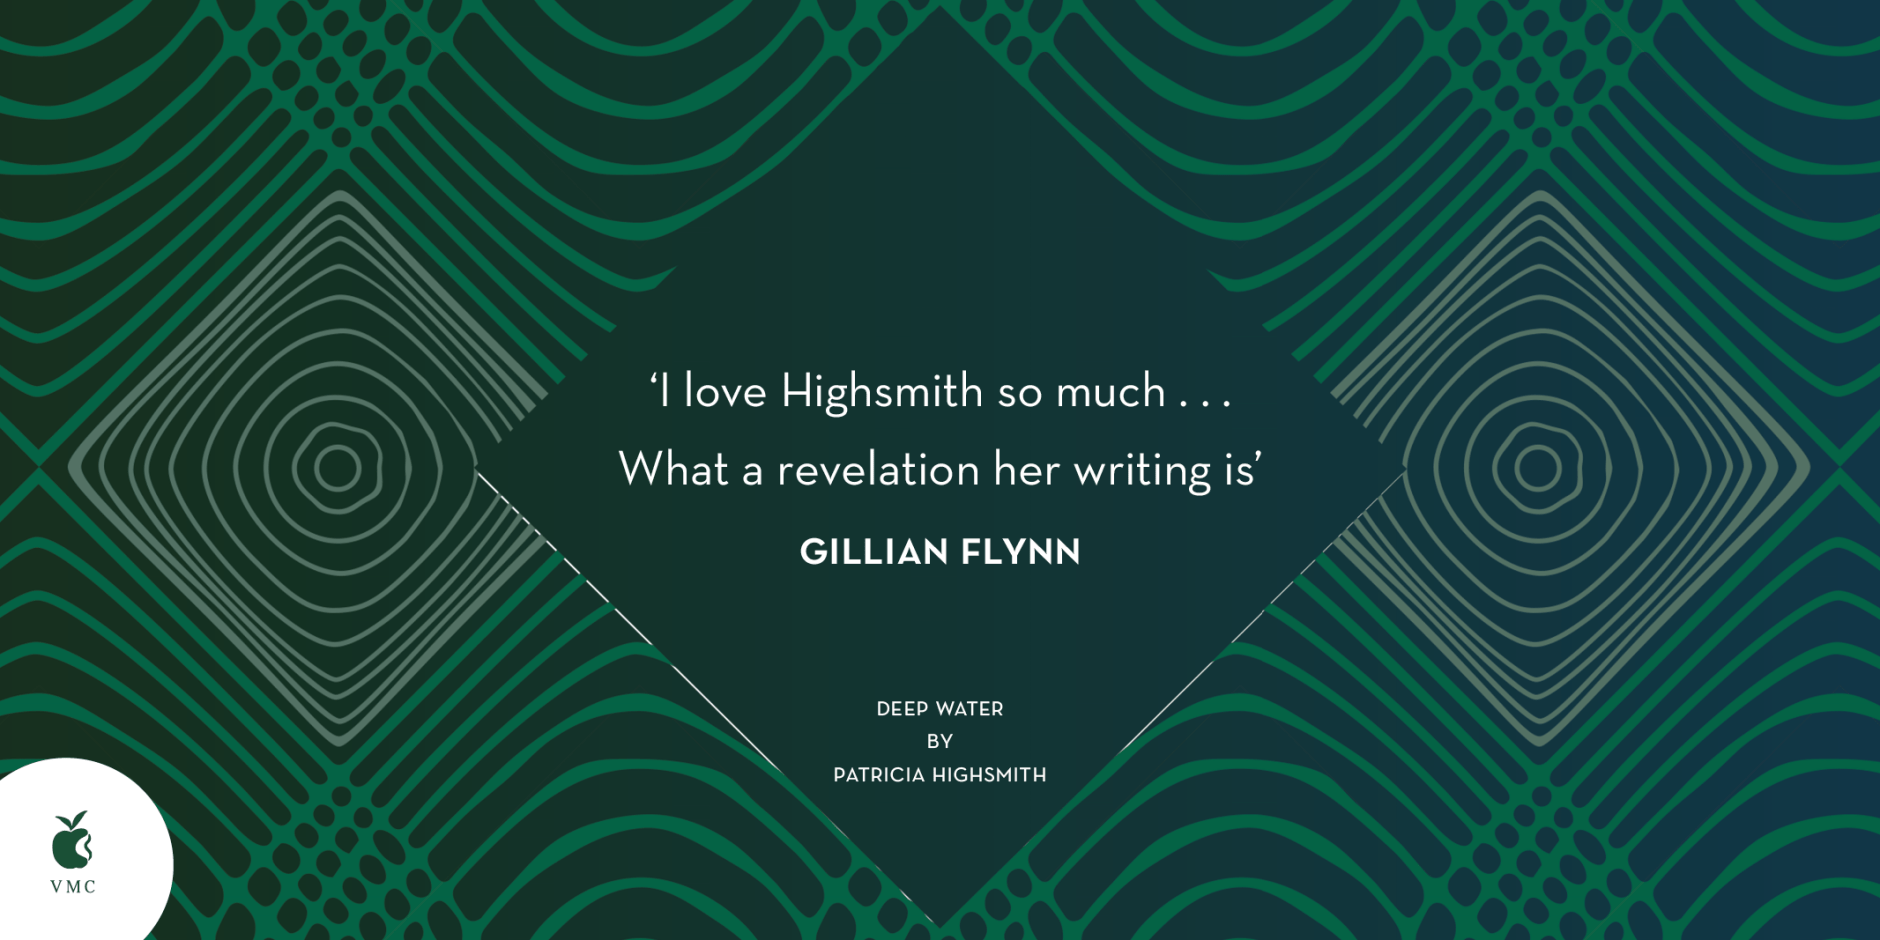 Gillian Flynn on Patricia Highsmith